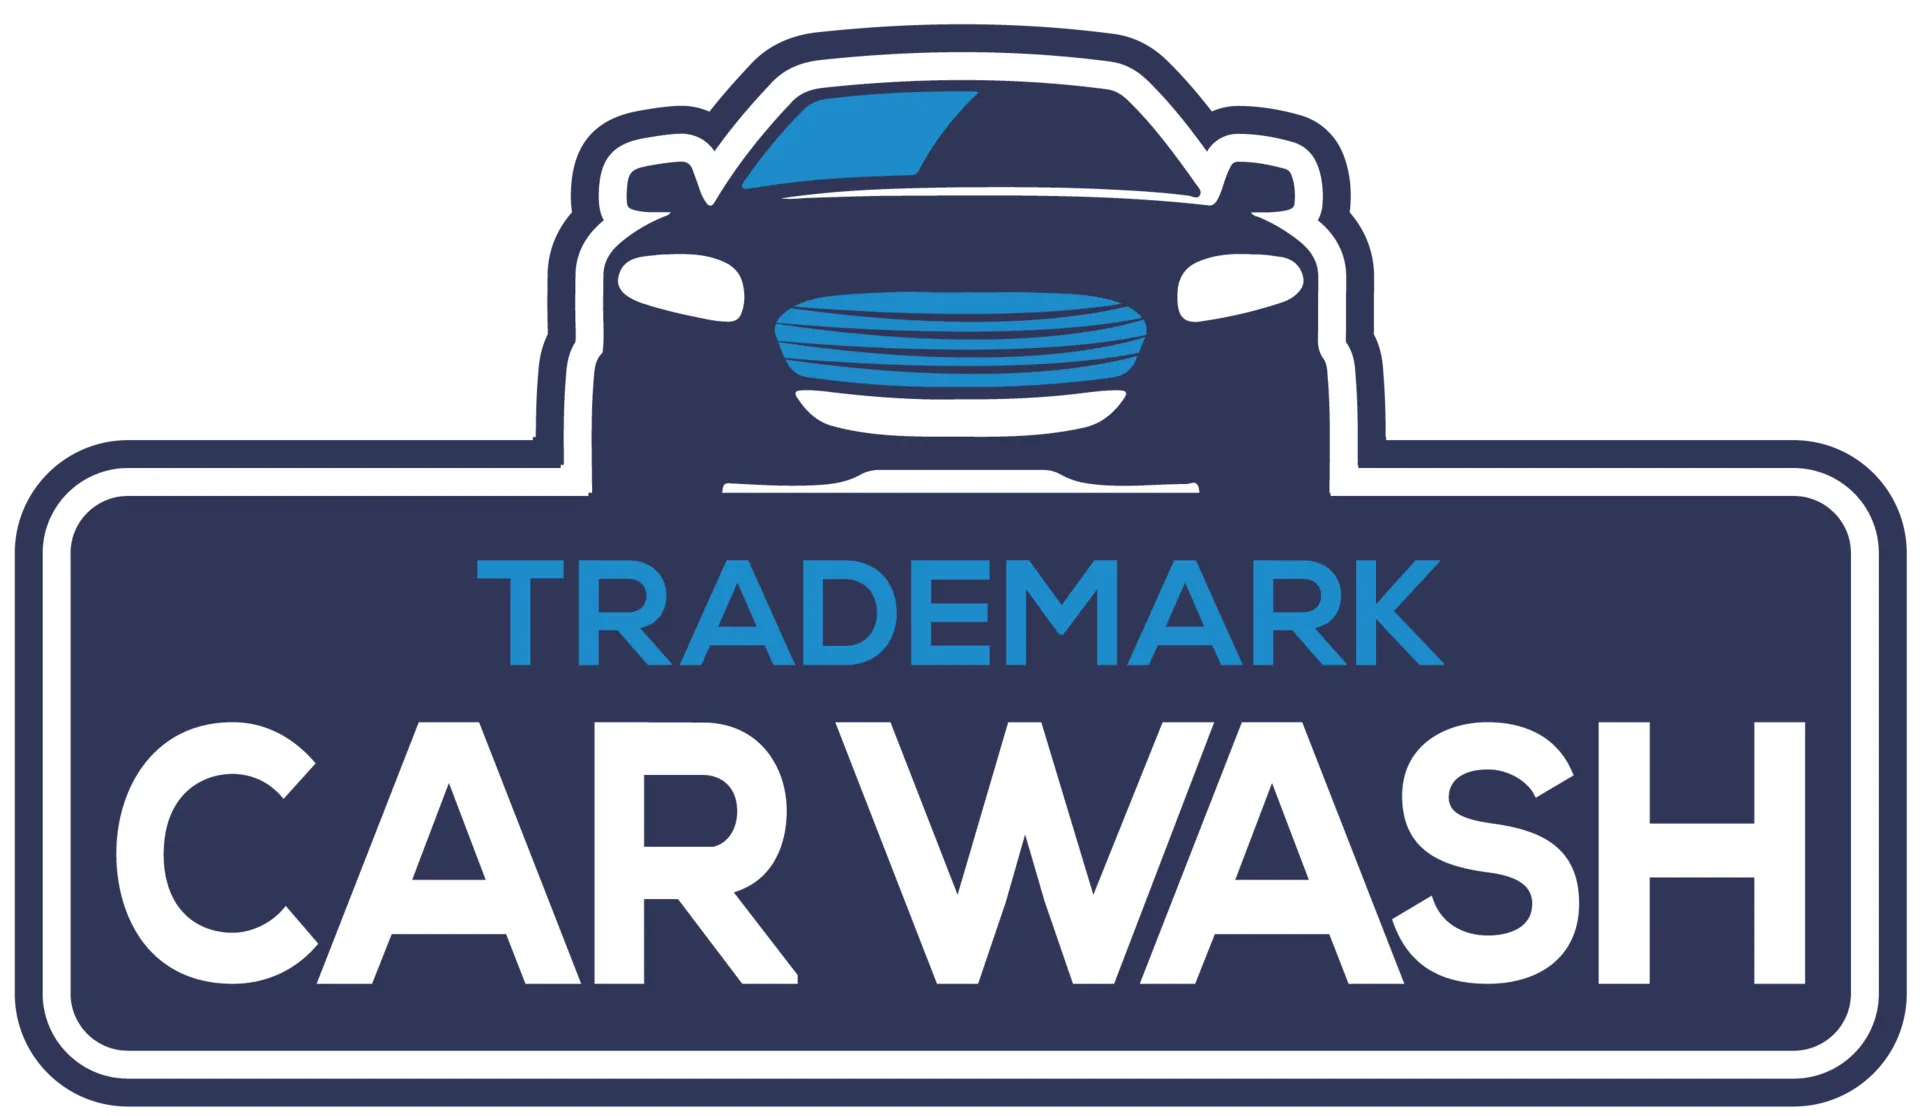 Trademark Car Washes